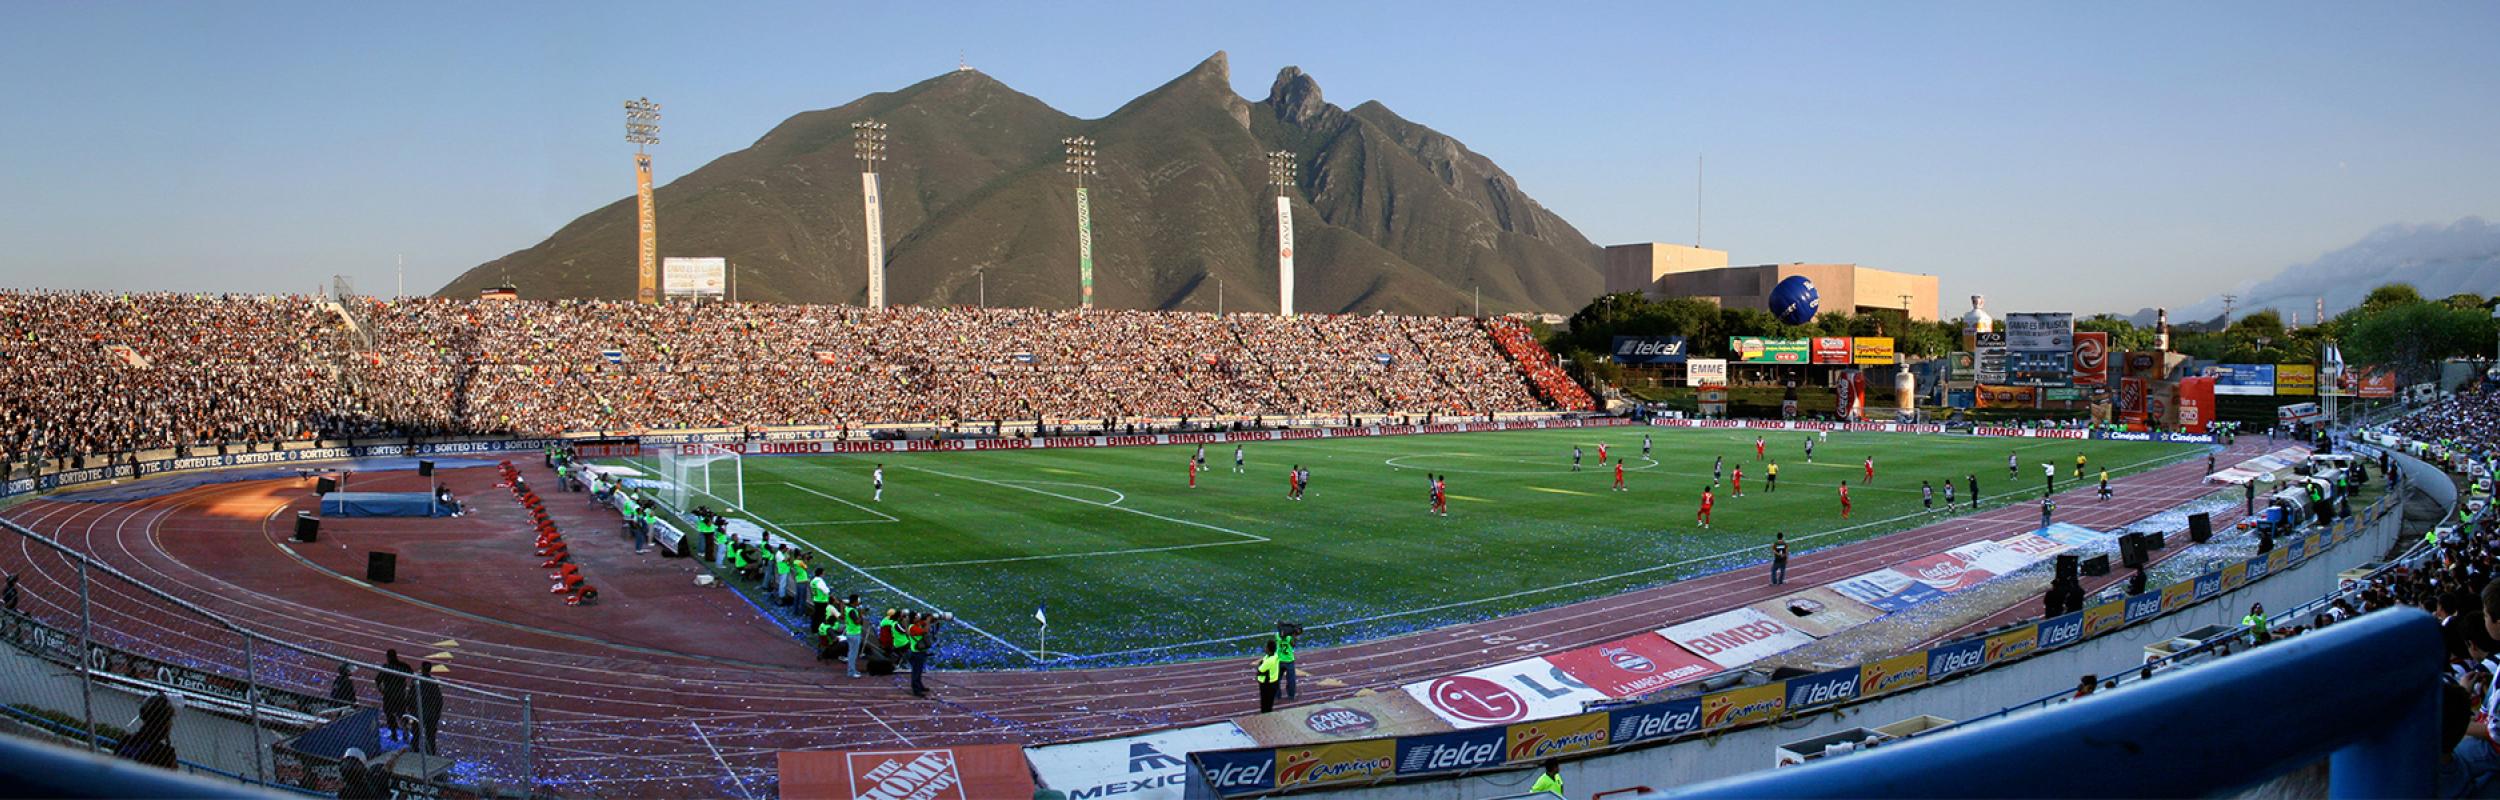 Νέα από το Λατινοαμερικάνικο ποδόσφαιρο από τους Futbolatino